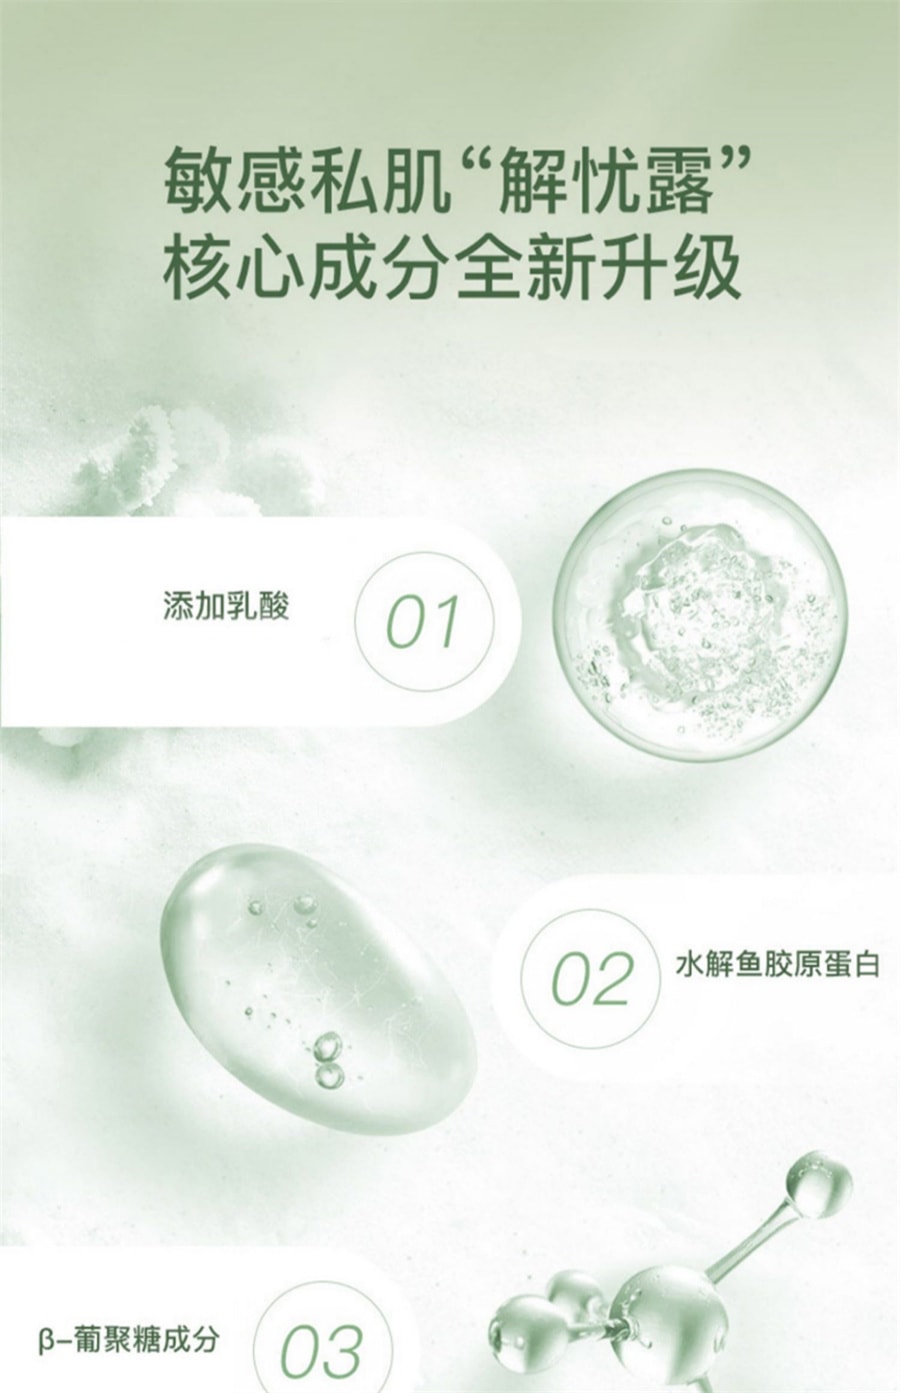 中国 妇炎洁 本草抑菌凝胶型60g私密洗护液便携女性私处护理洗护清洗液